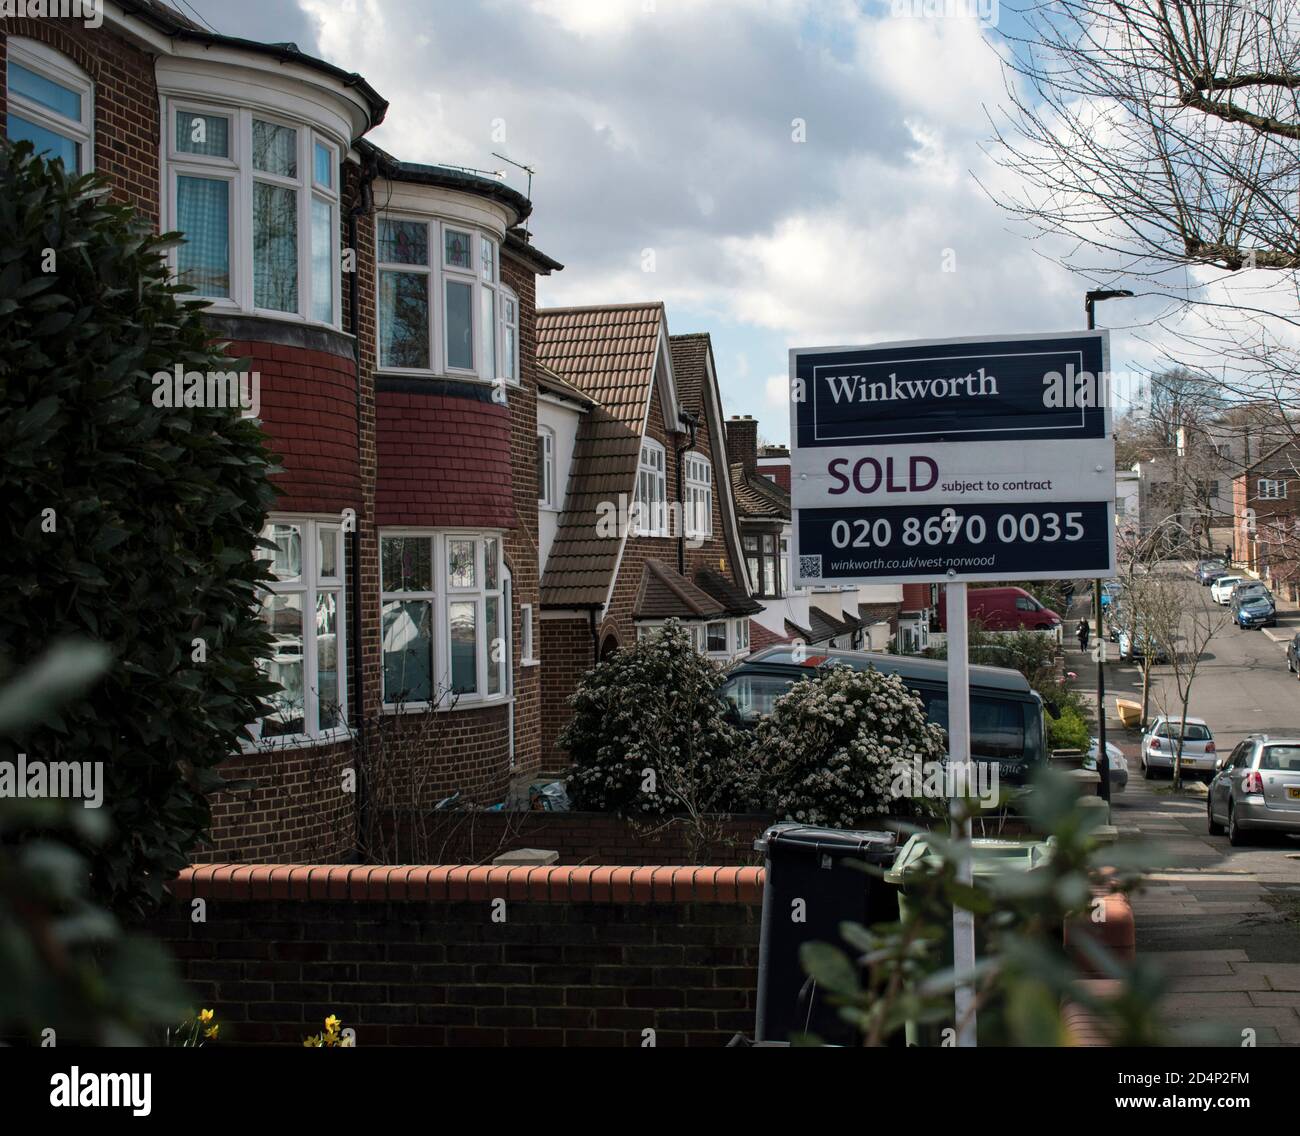 London, UK - 13. März 2020: Verkauft Zeichen von Winkworth Immobilienmakler auf einer Londoner Straße mit Häusern gesäumt Stockfoto